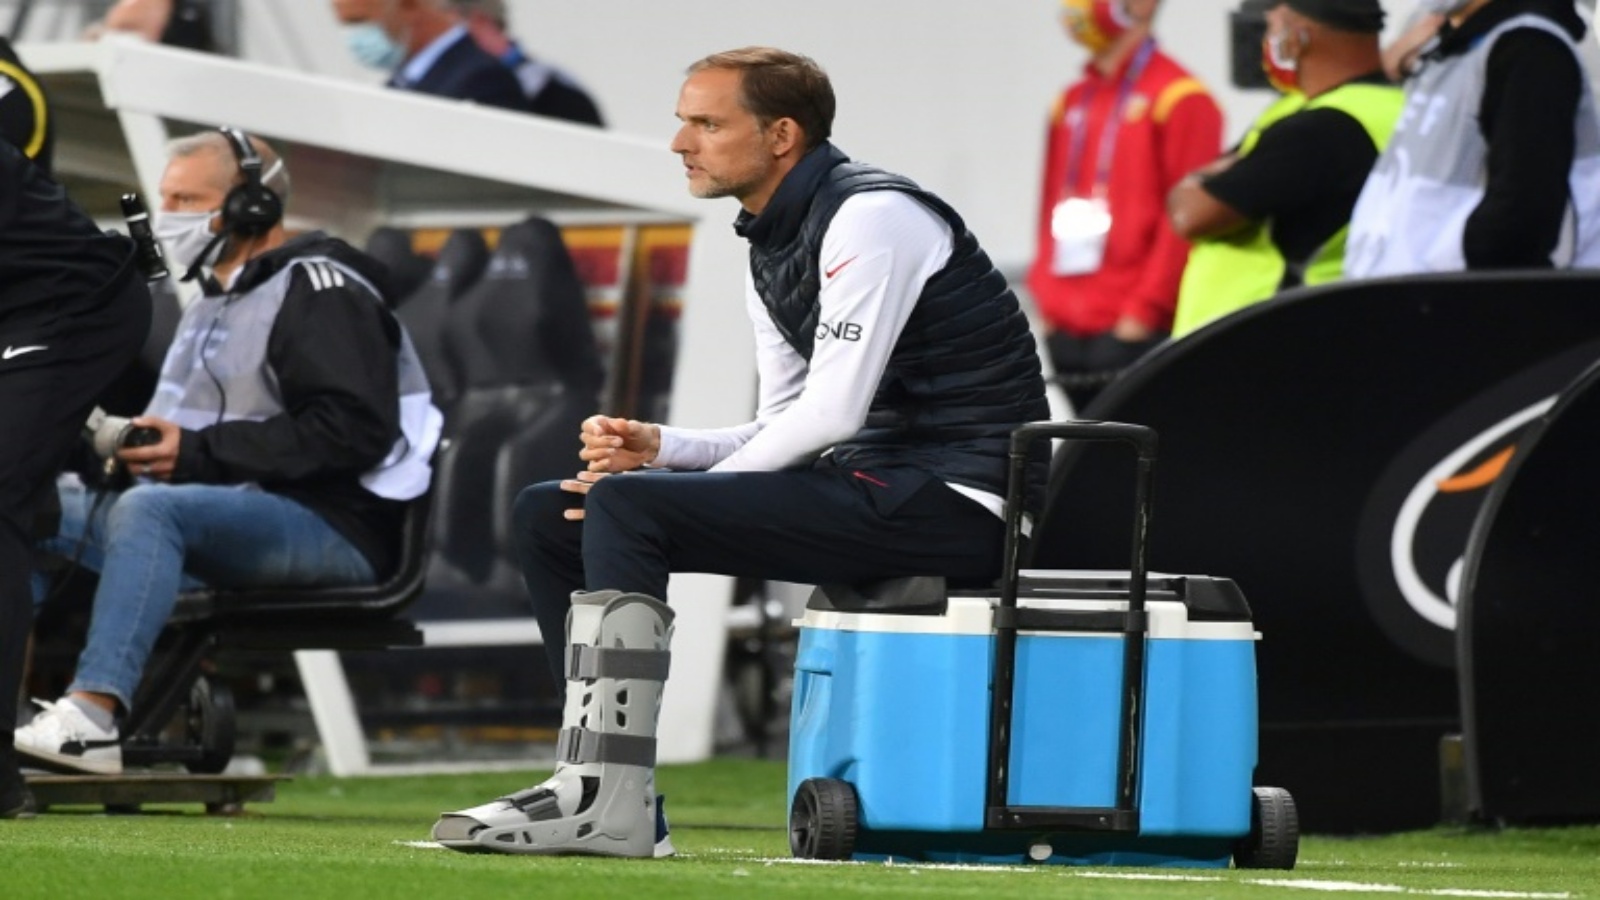 المدرب الألماني لباريس سان جرمان توماس توخل خلال المباراة ضد لنس في الدوري الفرنسي لكرة القدم، لنس، شمال فرنسا في 10 أيلول/سبتمبر 2020